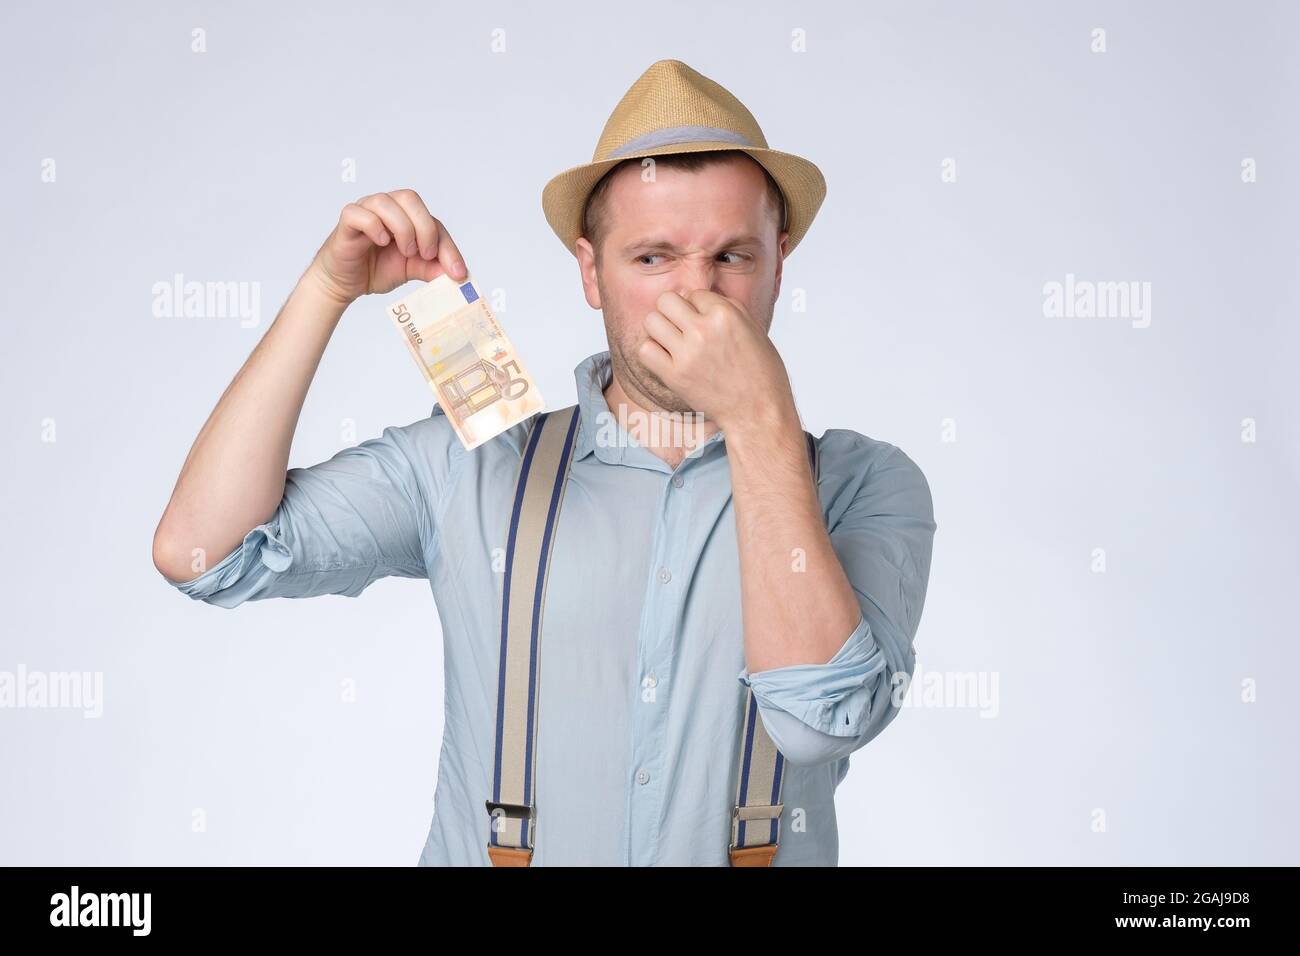 Junger Mann riecht etwas stinkend und ekelhaft vom Geld. Stockfoto